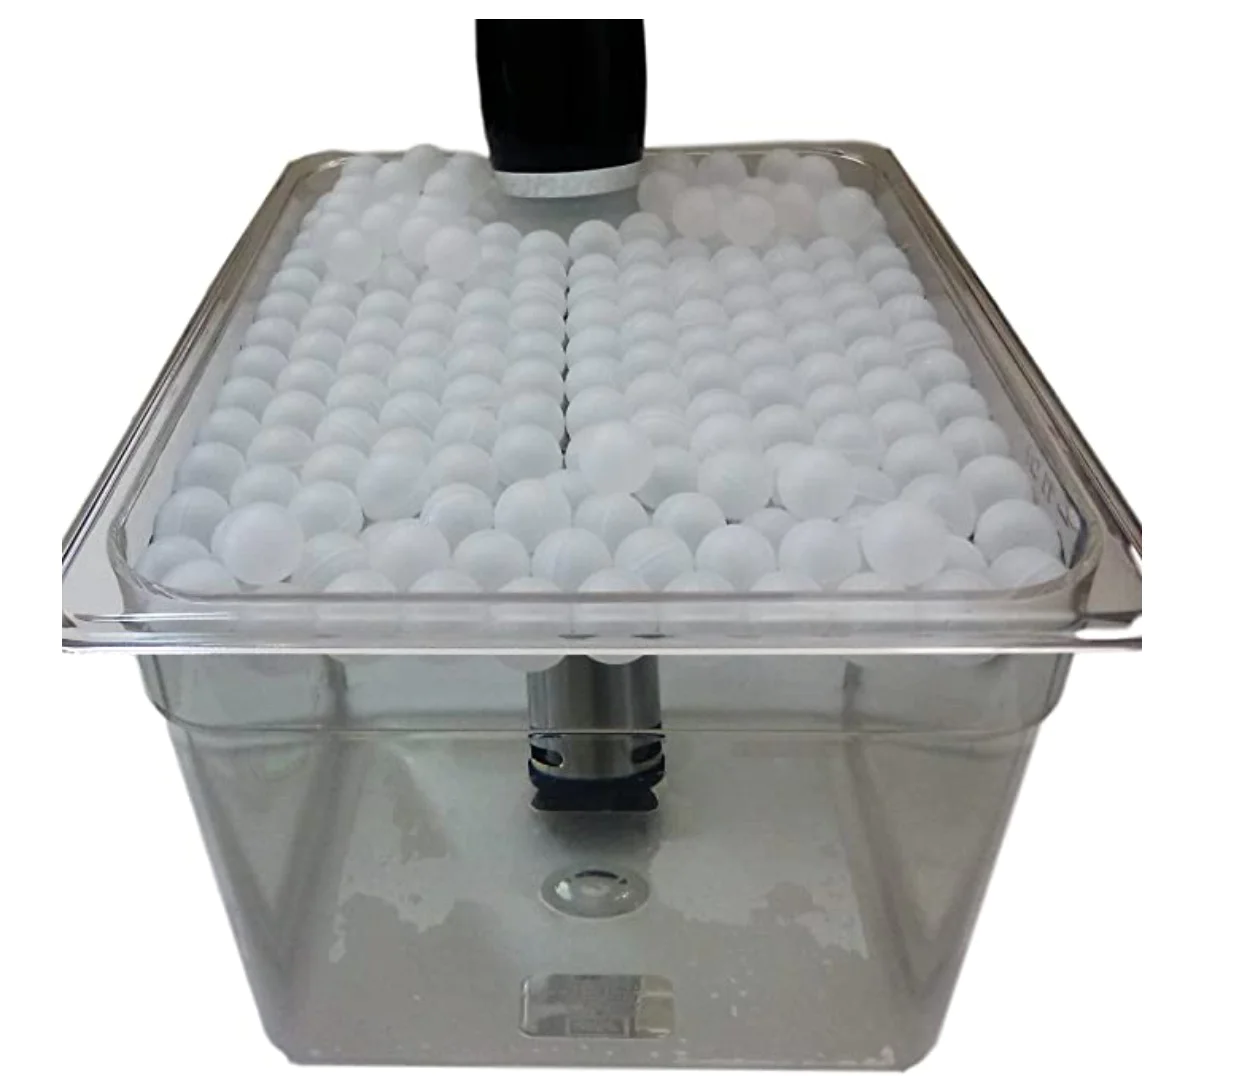 XINTAO 20mm BPA Free 250 bolas de polipropileno PP bolas de agua Sous Vide bola de flotación de plástico